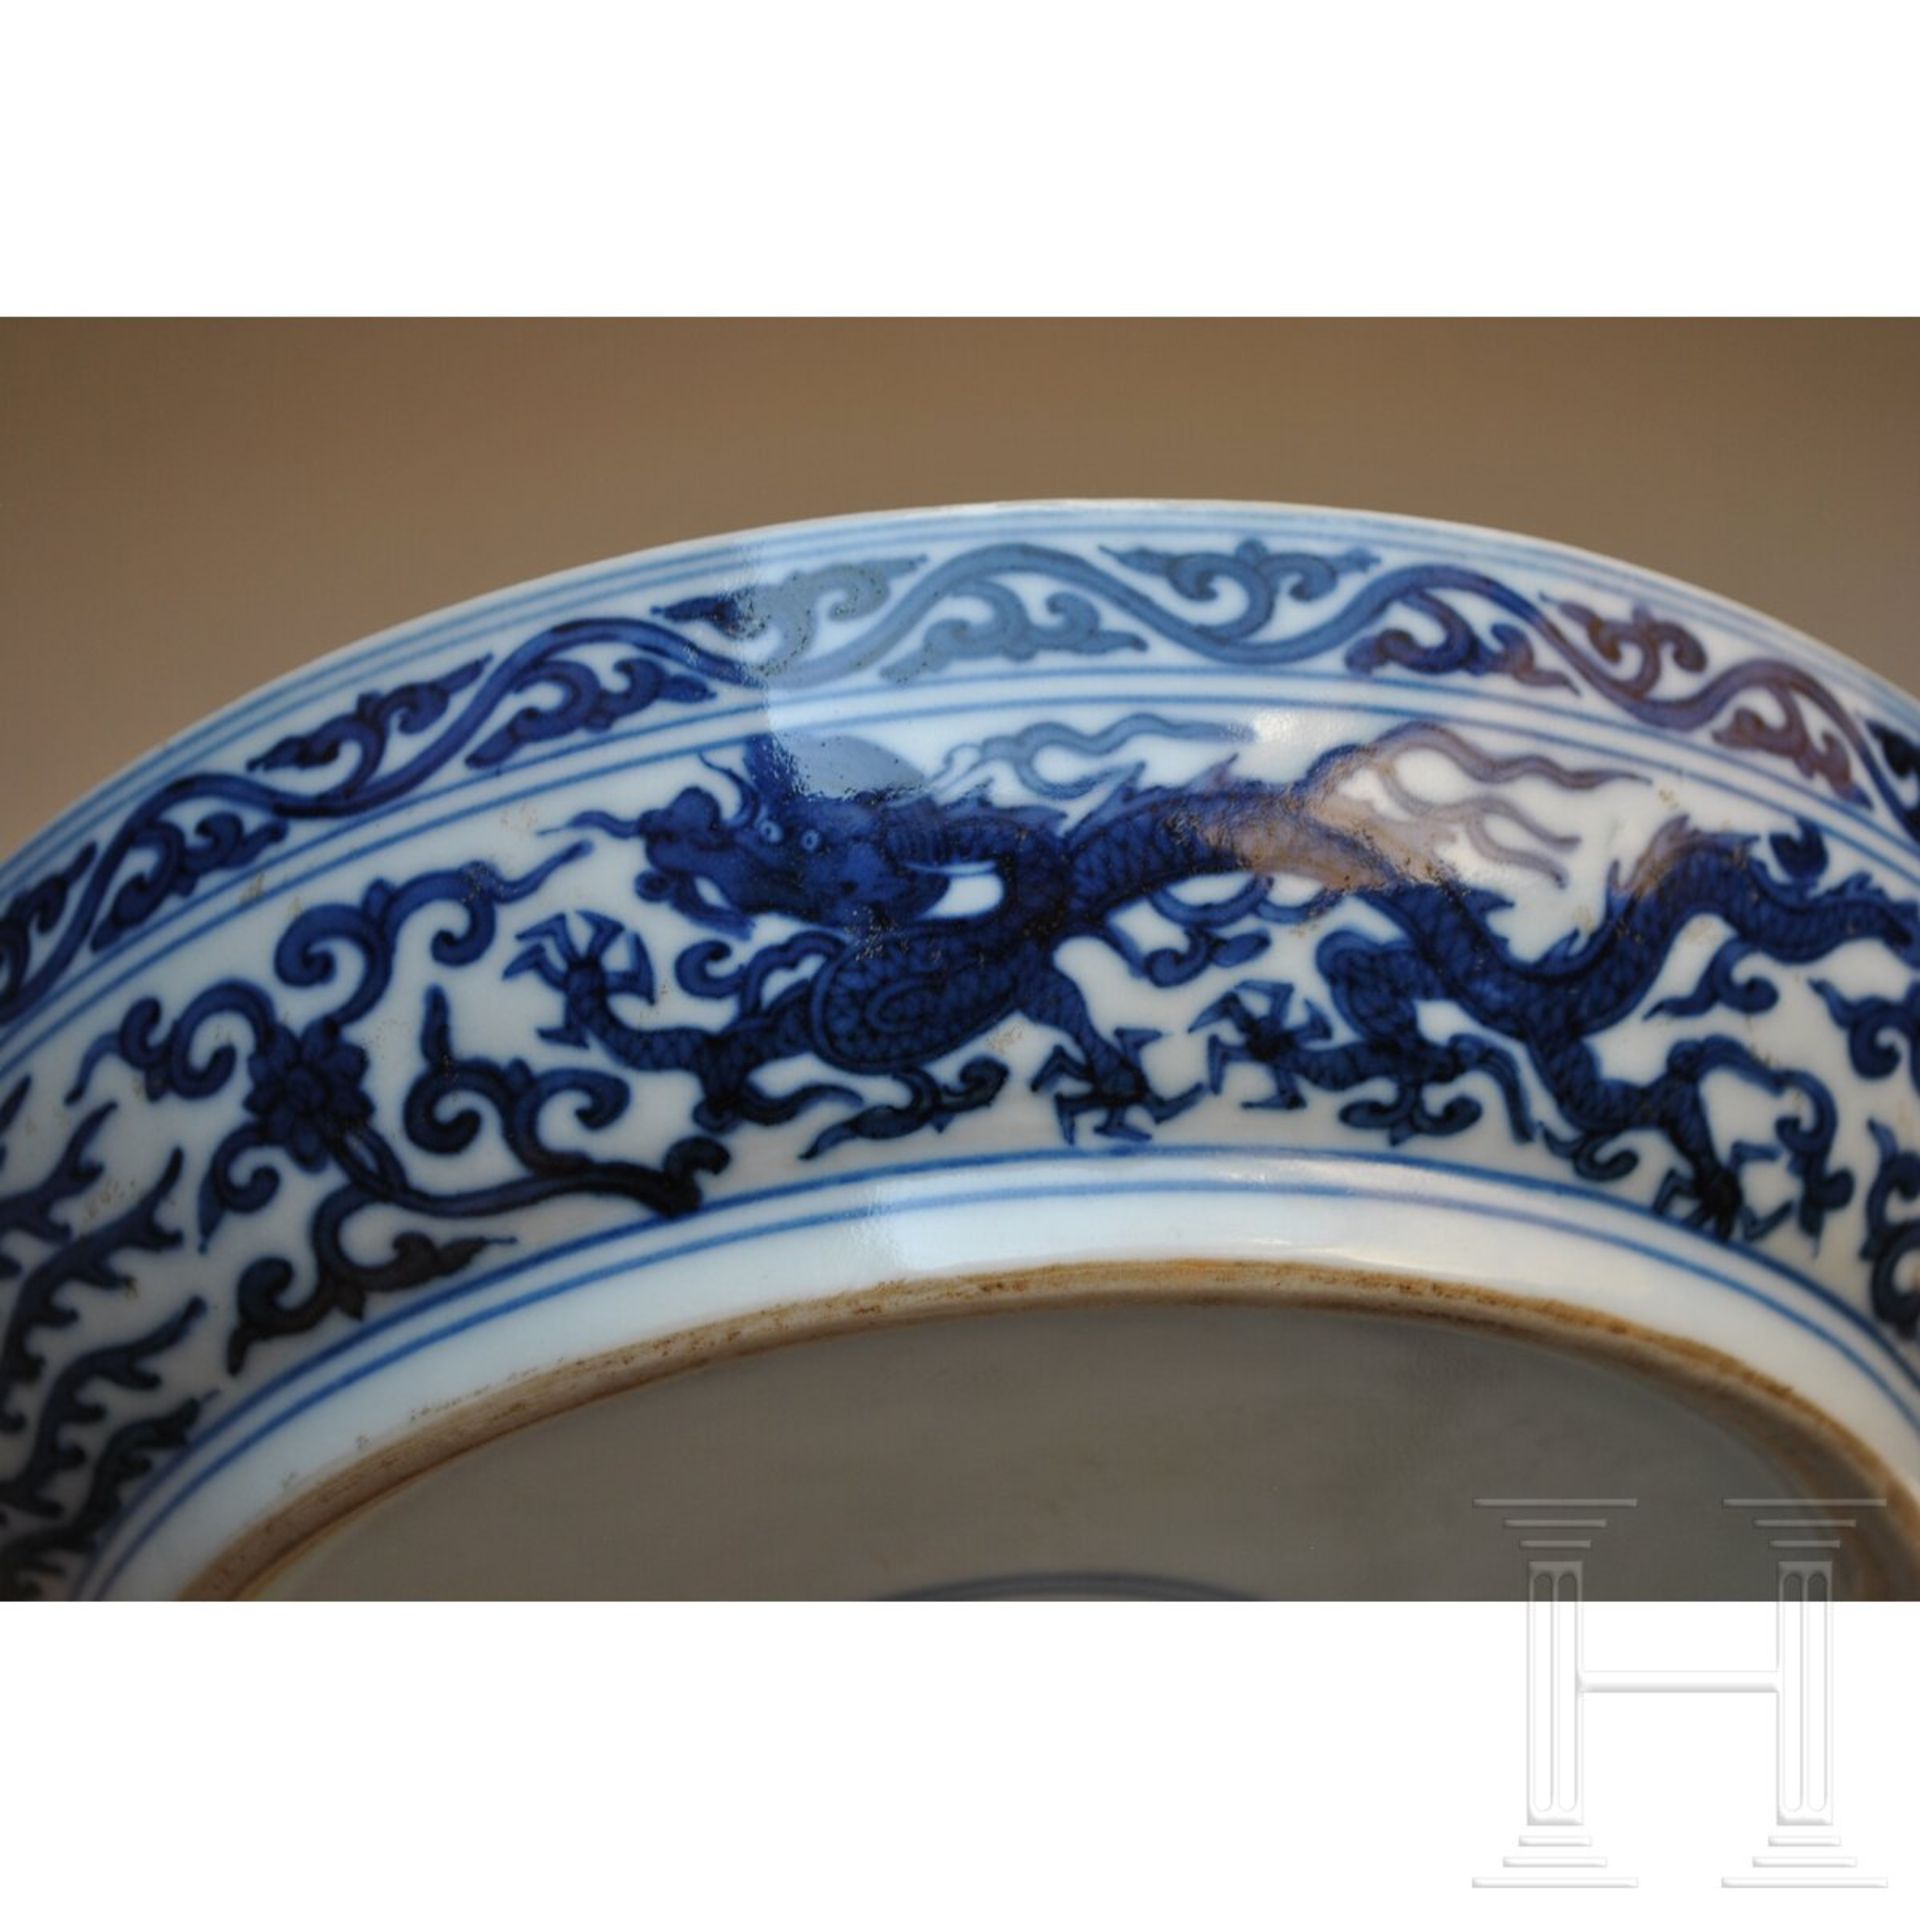 Große blaue-weiße Deckeldose mit Drache und Wanli-Sechszeichenmarke, China, 18./19. Jhdt. - Image 12 of 17